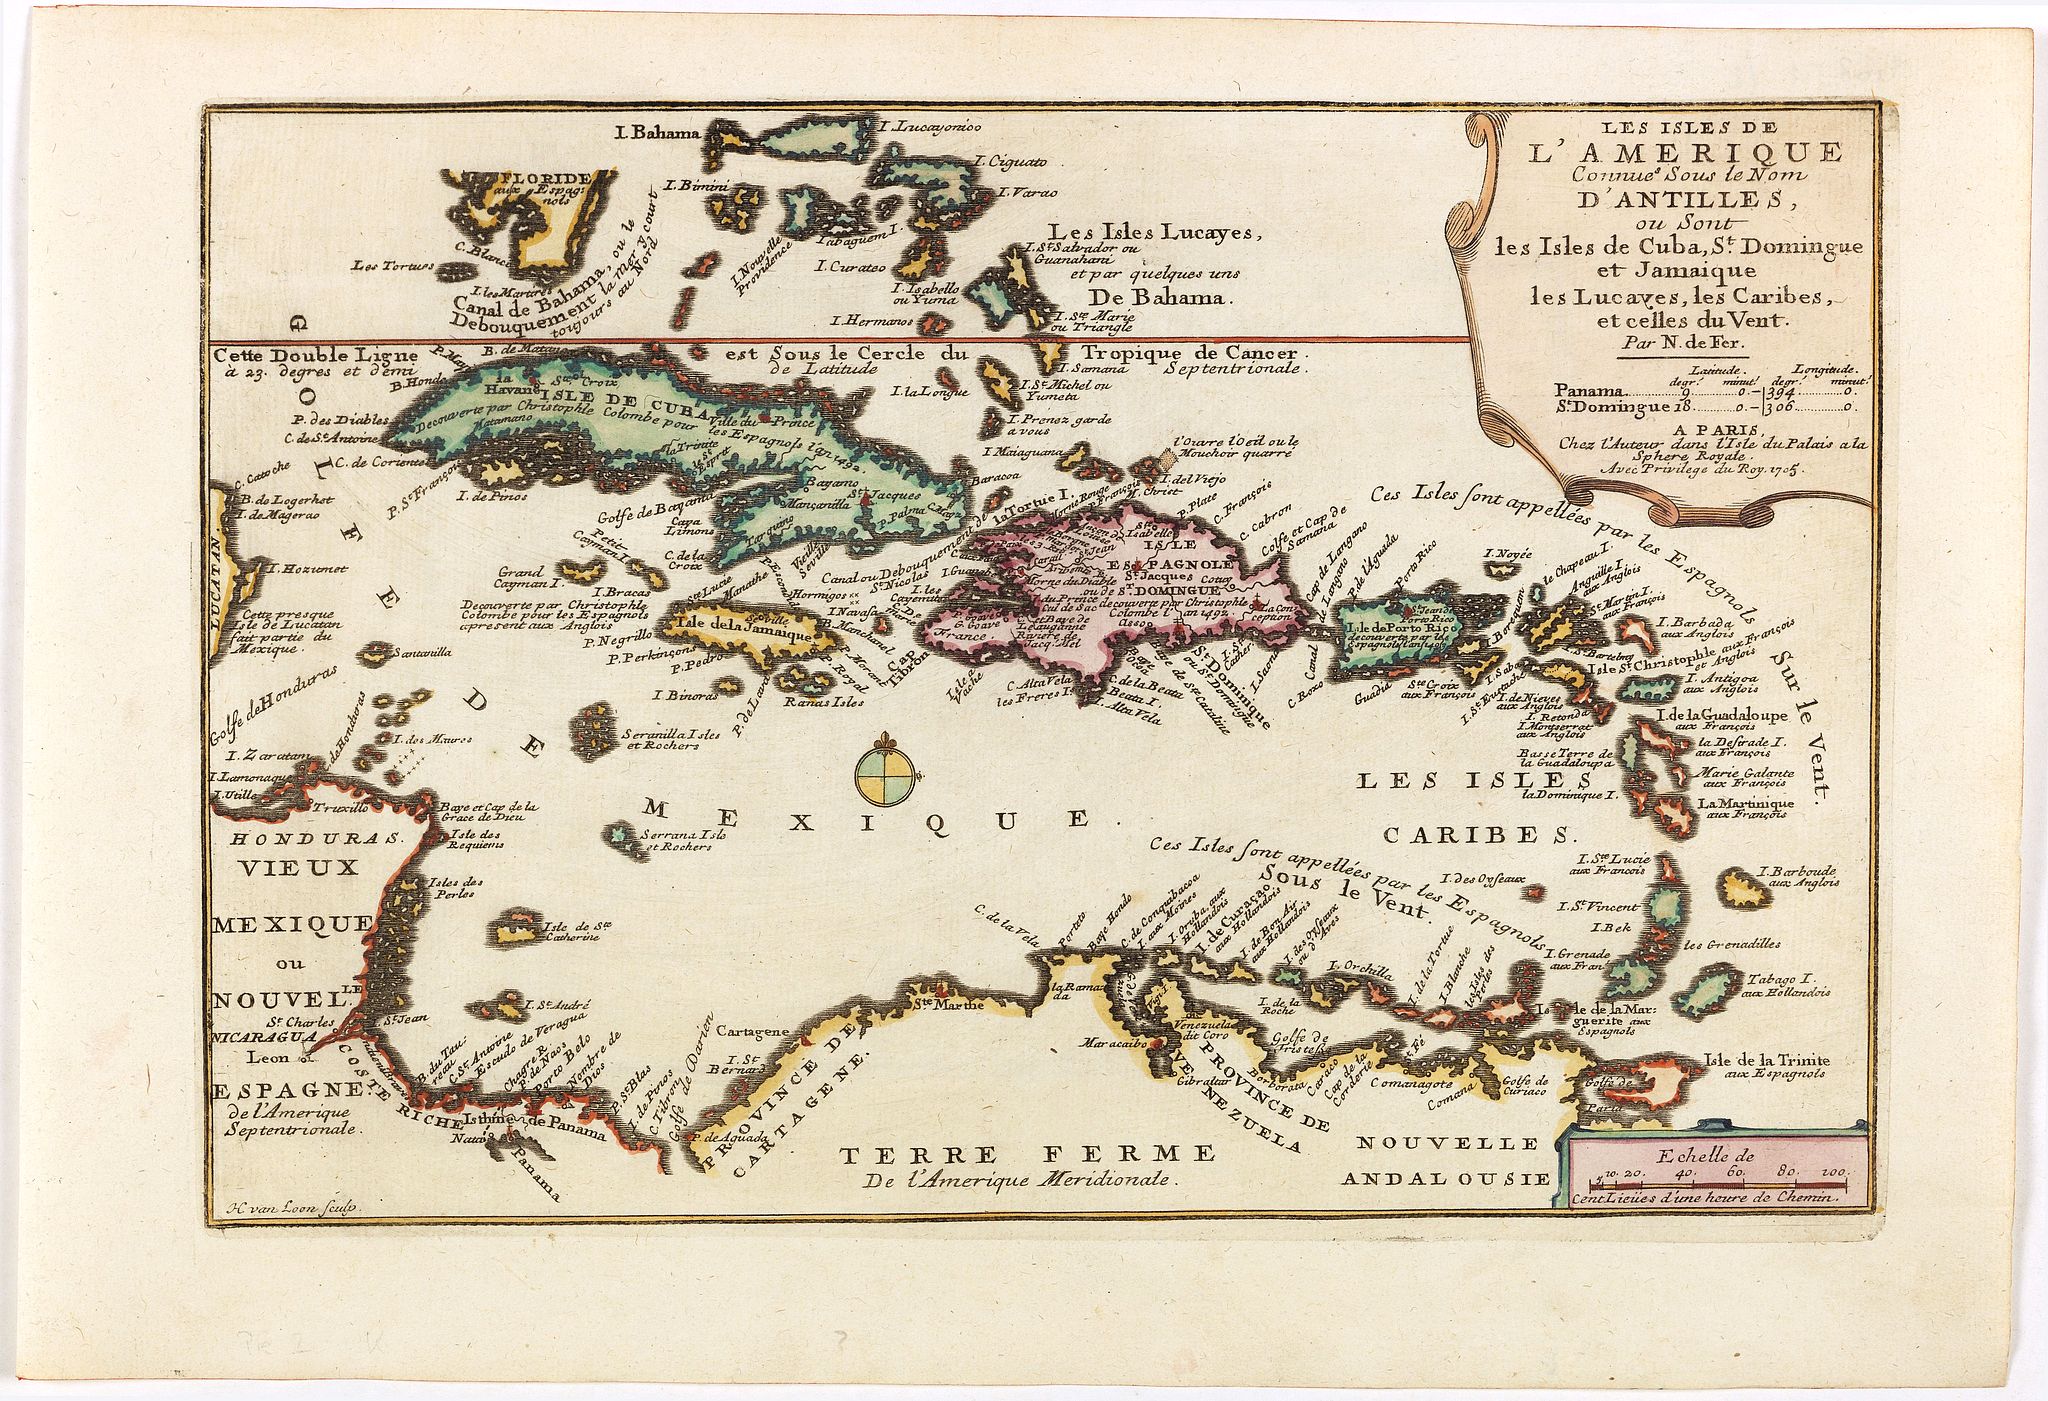 Les Isles de l'Amerique Connues sous le Nom d'Antilles, ou sont les Isles de Cuba, St Domingue et Jamaique les Lucayes, les Caribes et celles du Vent